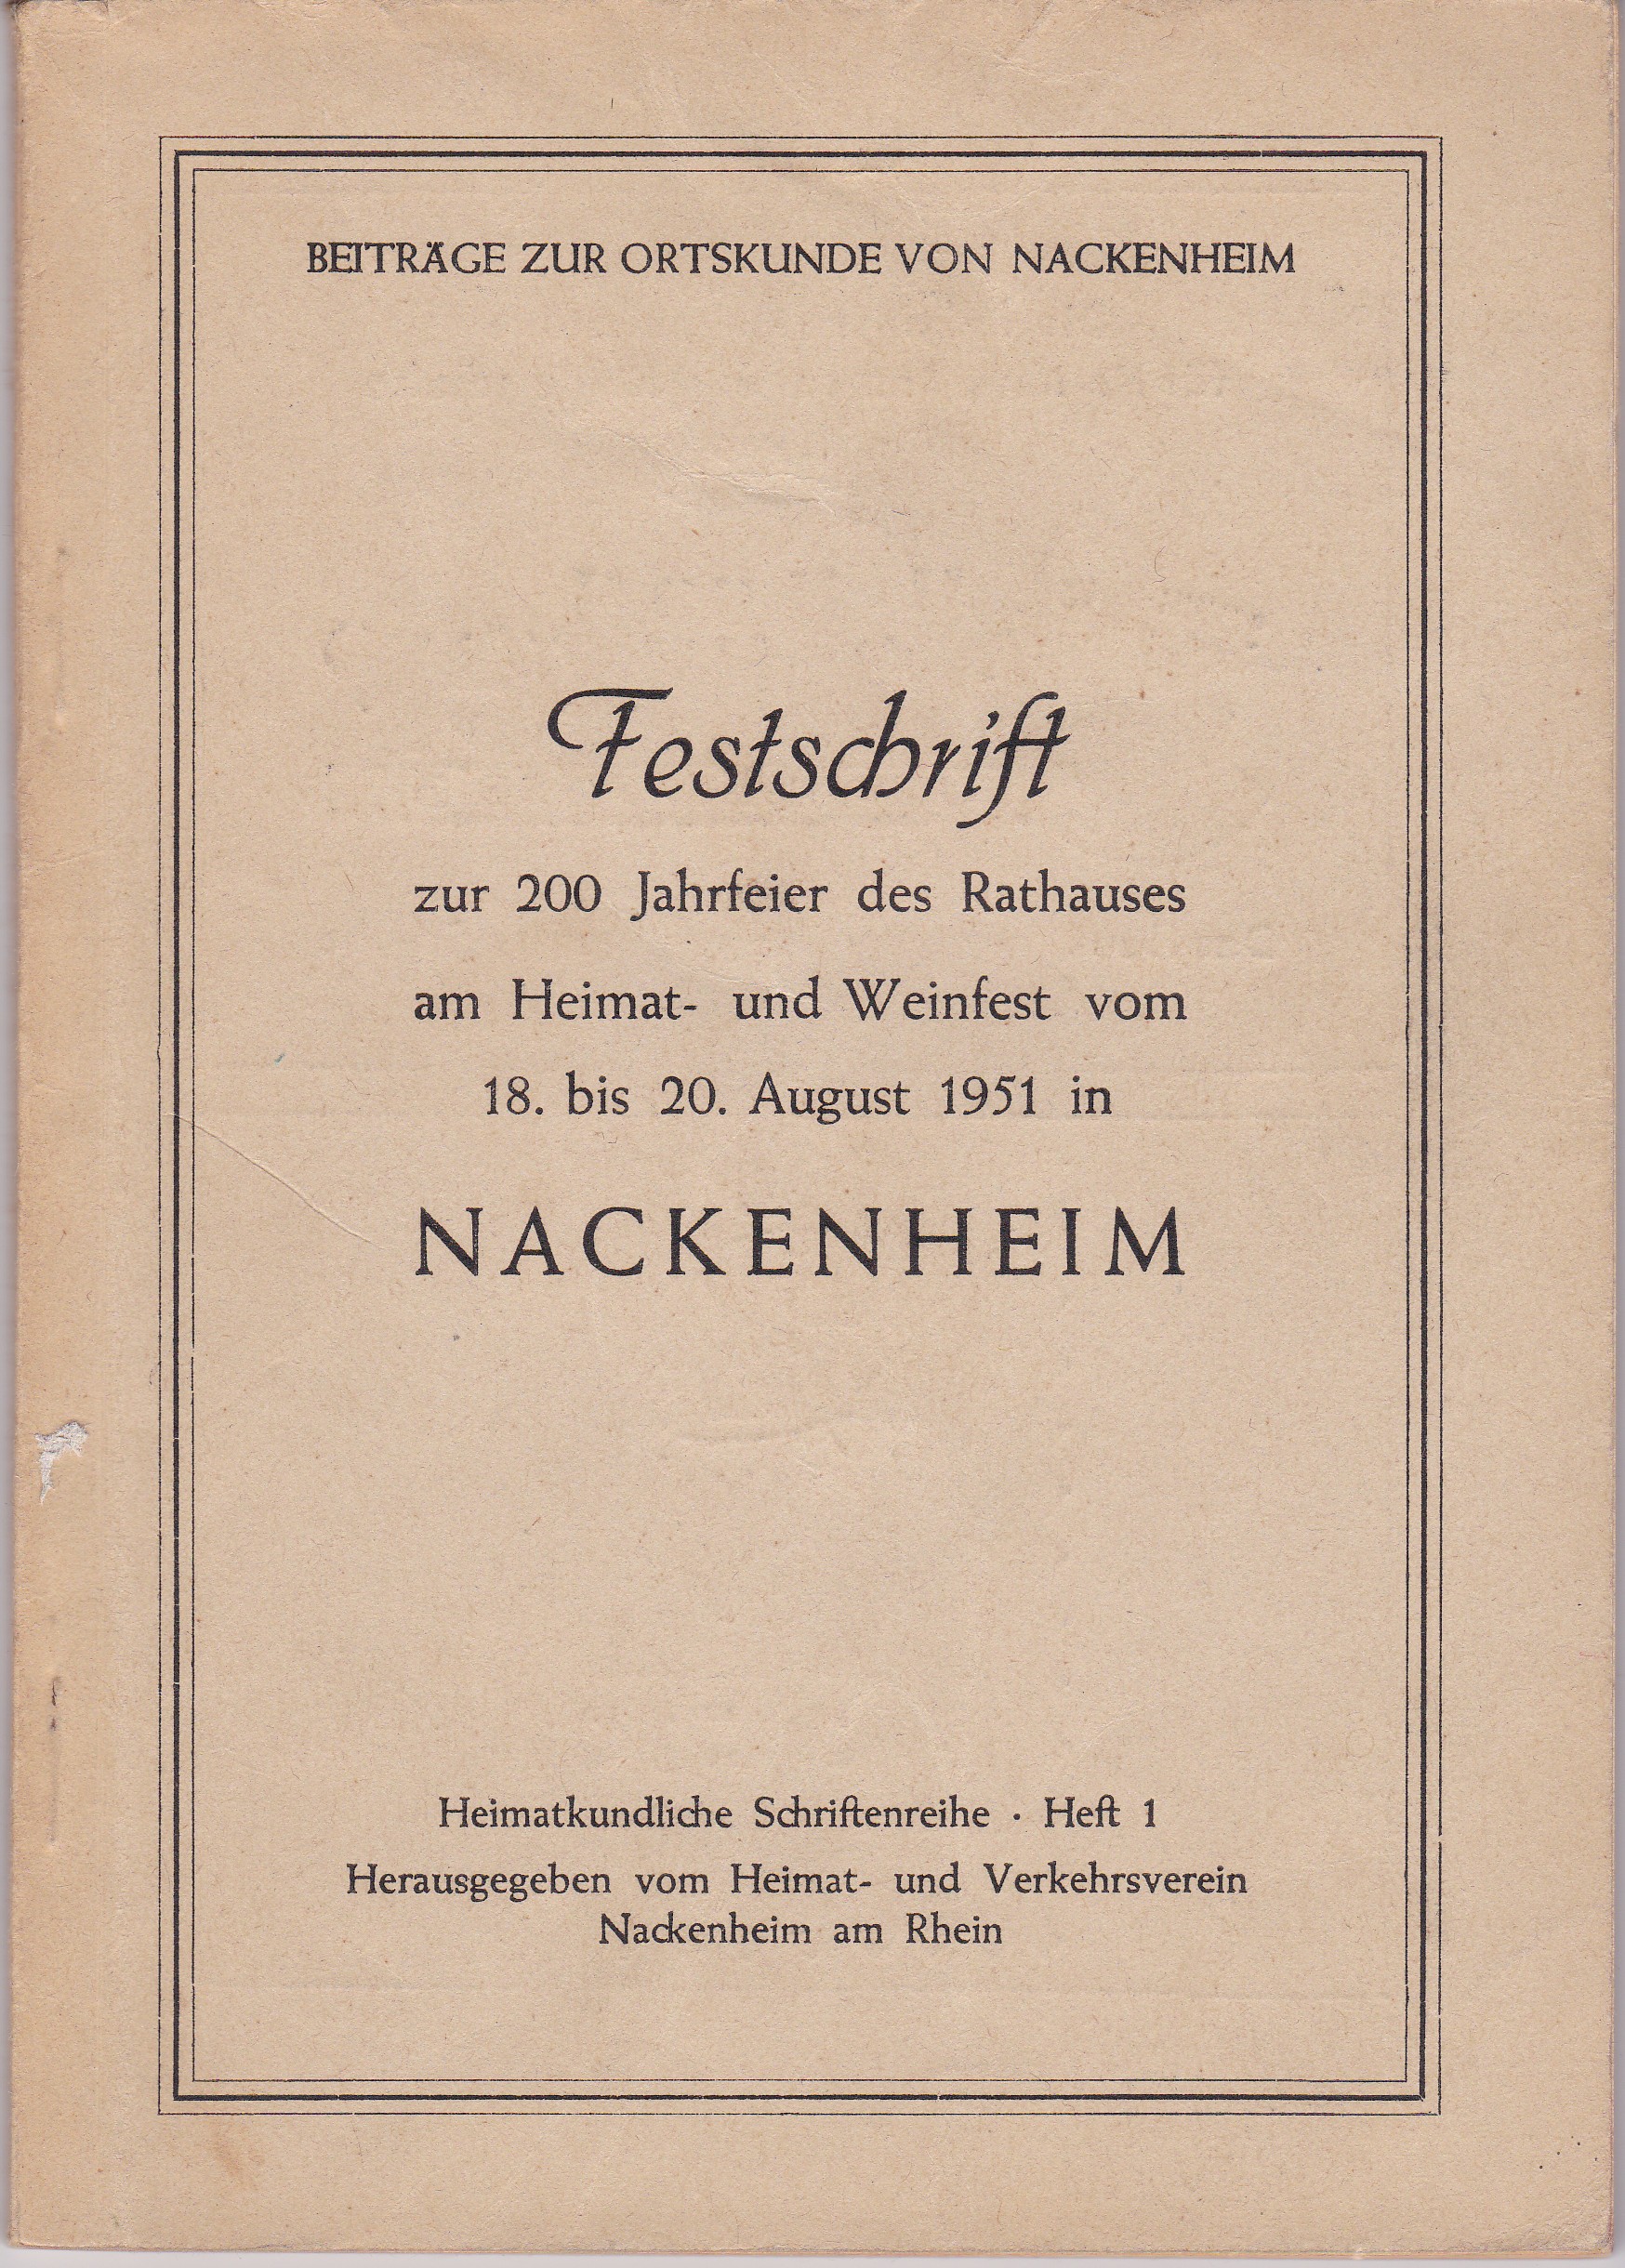 Festschrift zur 200 jahrfeier des Rathauses von Nackenheim (Museum Guntersblum  im Kellerweg 20 CC BY-NC-SA)